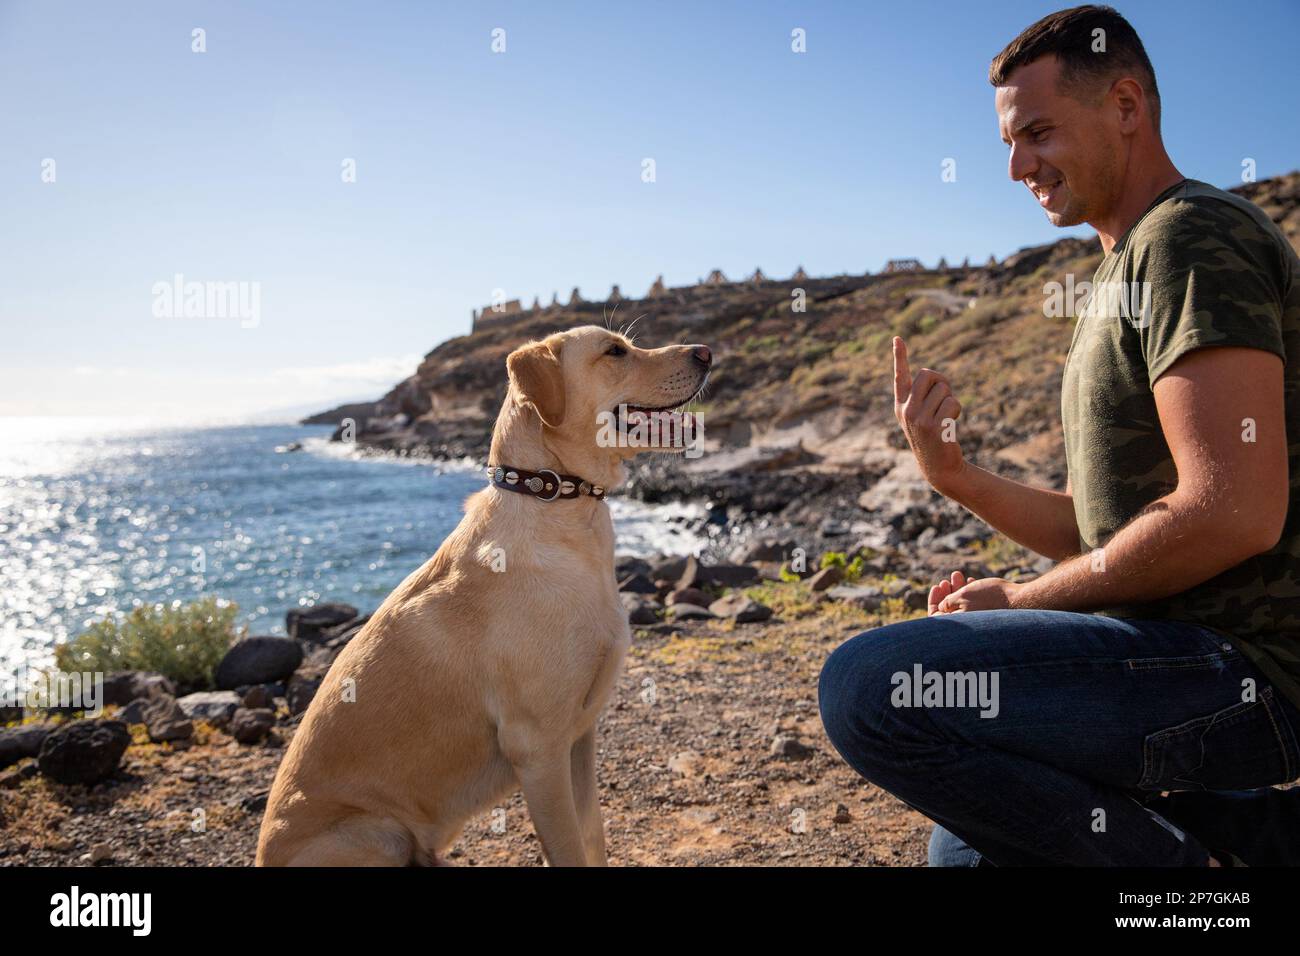 Un chien entraîneur gestuelle avec sa main devant un chien pendant une session d'entraînement. Banque D'Images